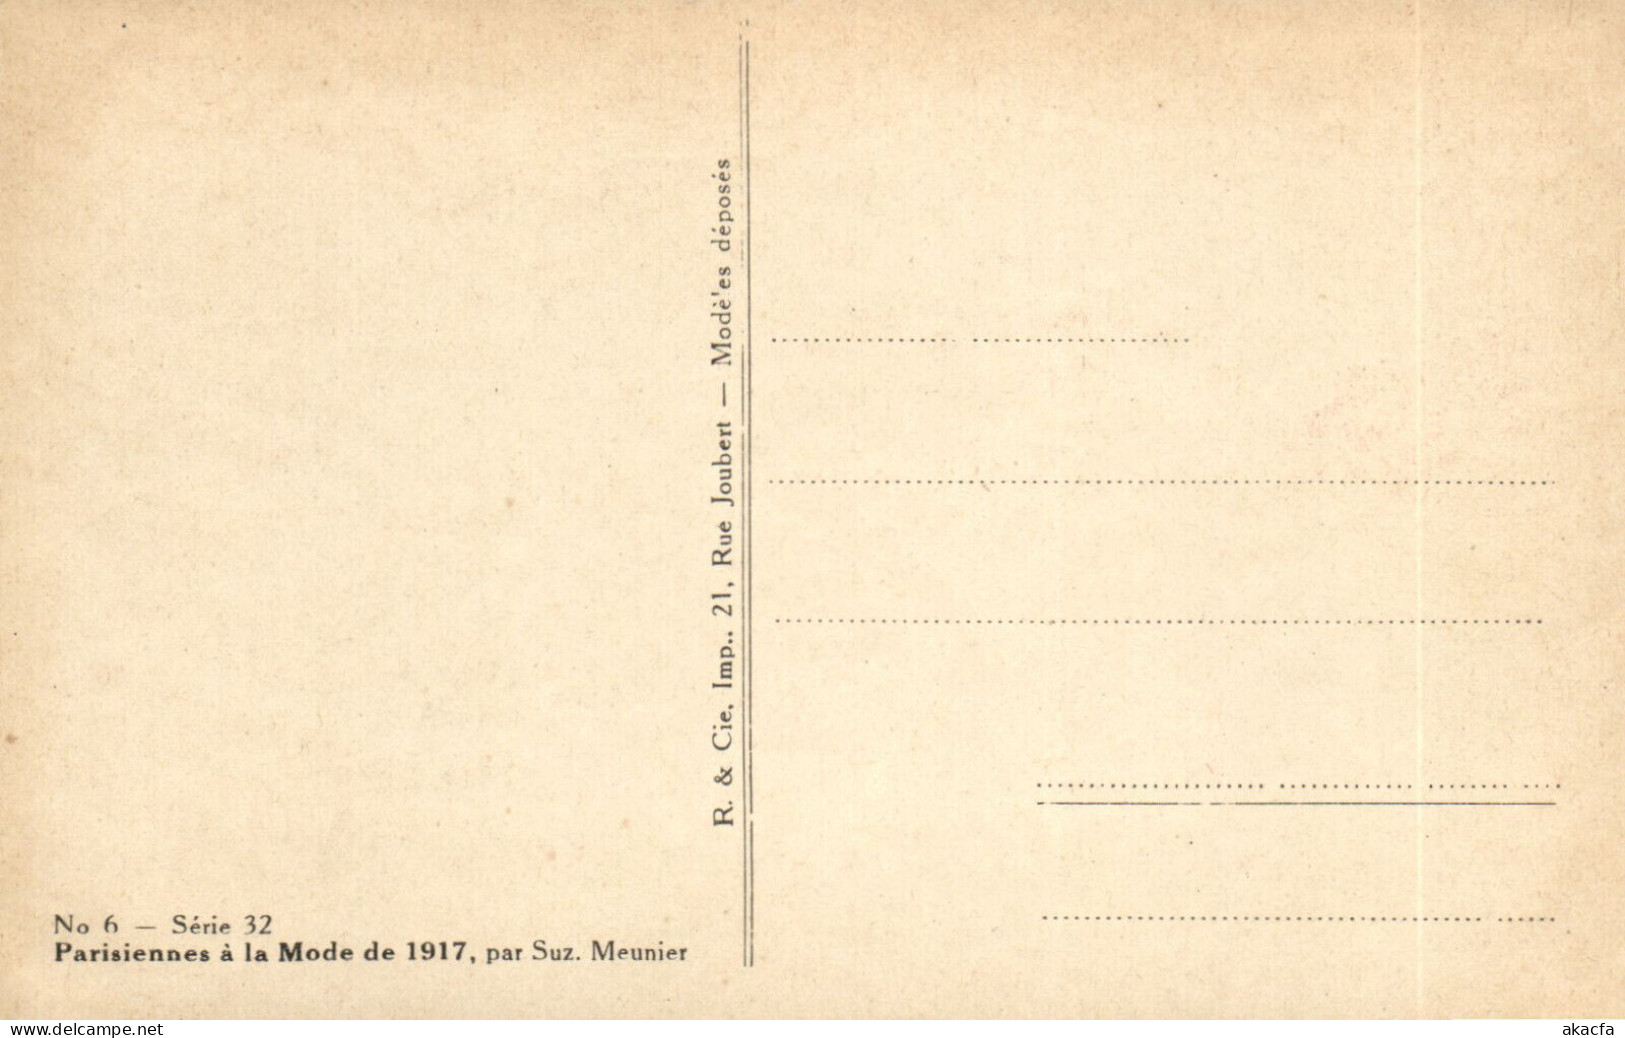 PC ARTIST SIGNED, MEUNIER, PARISIENNES Á LA MODE, Vintage Postcard (b50627) - Meunier, S.